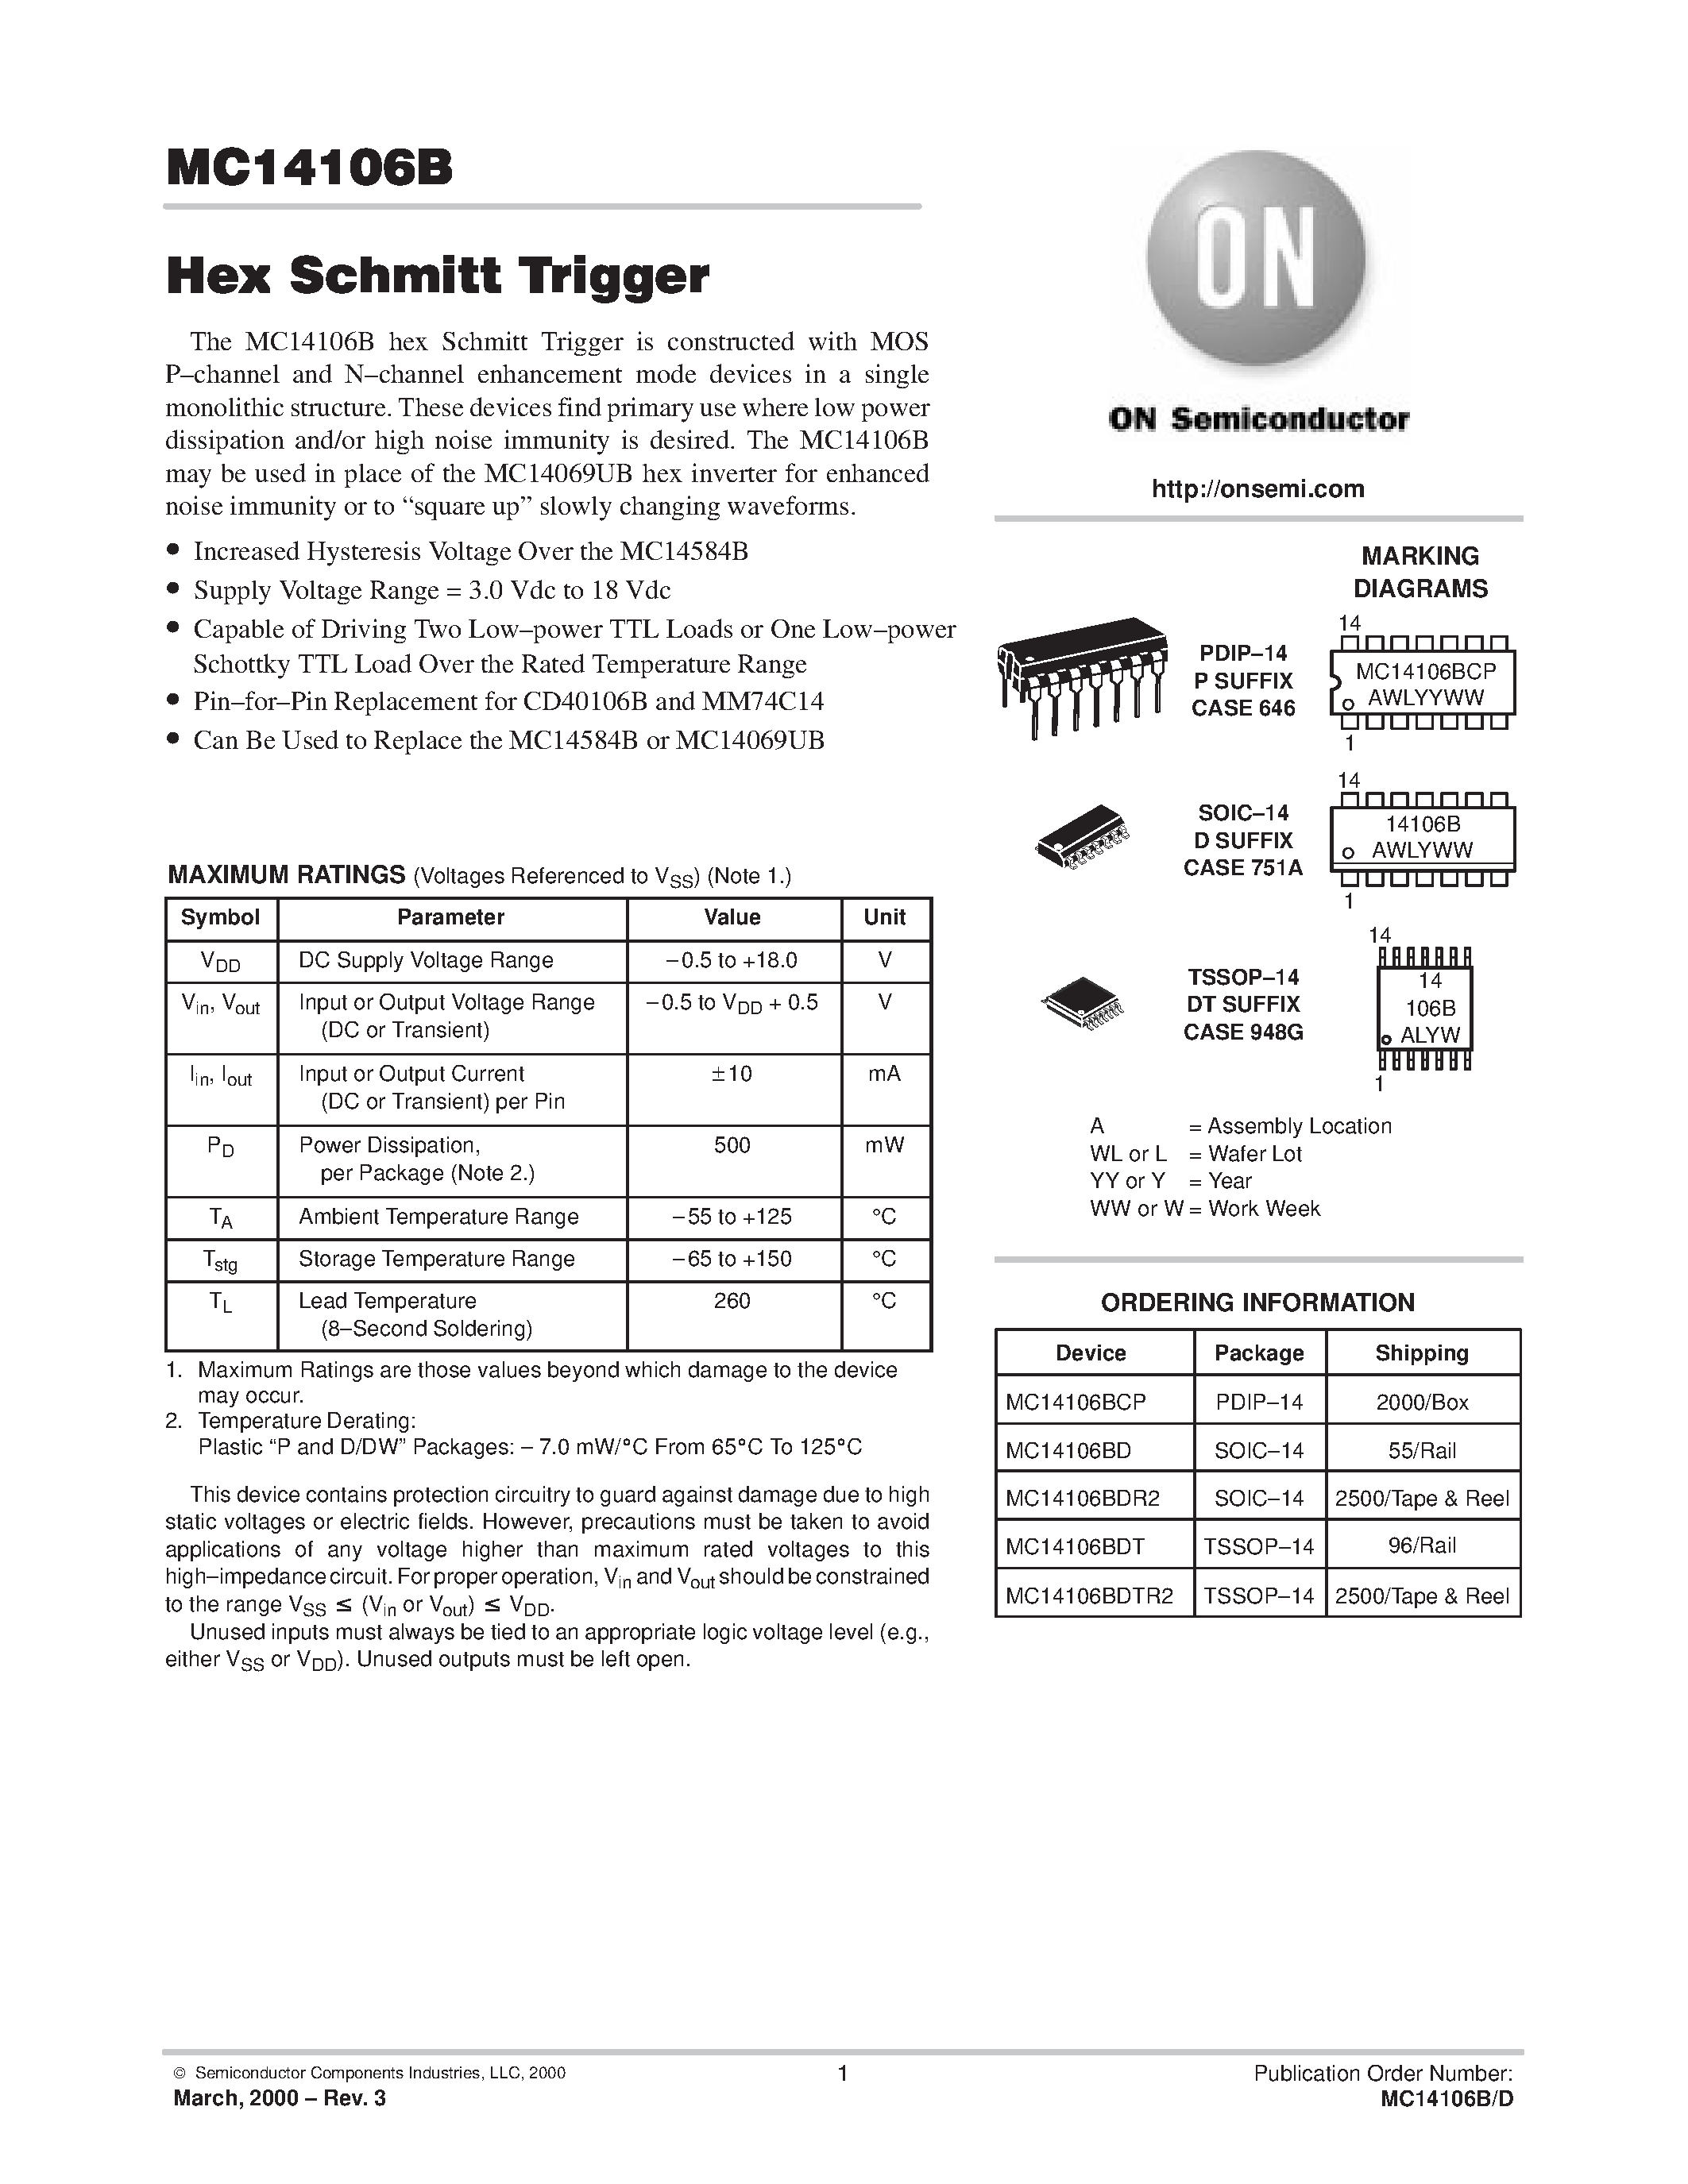 Datasheet MC14106BCP - Hex Schmitt Trigger page 1